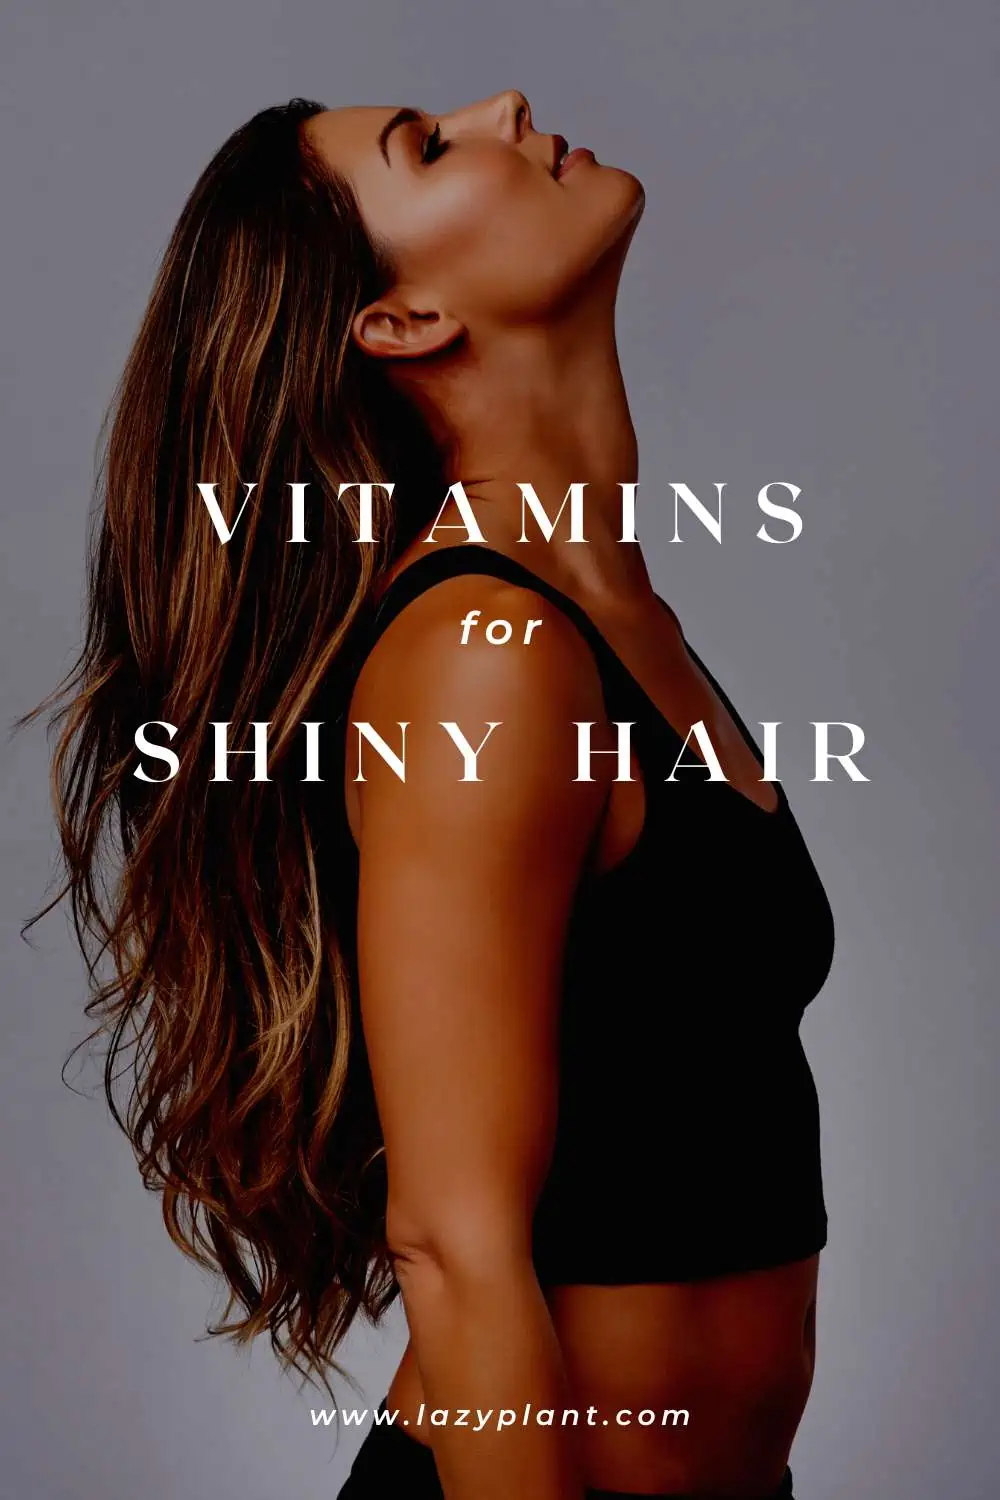 Vitamins for shiny hair